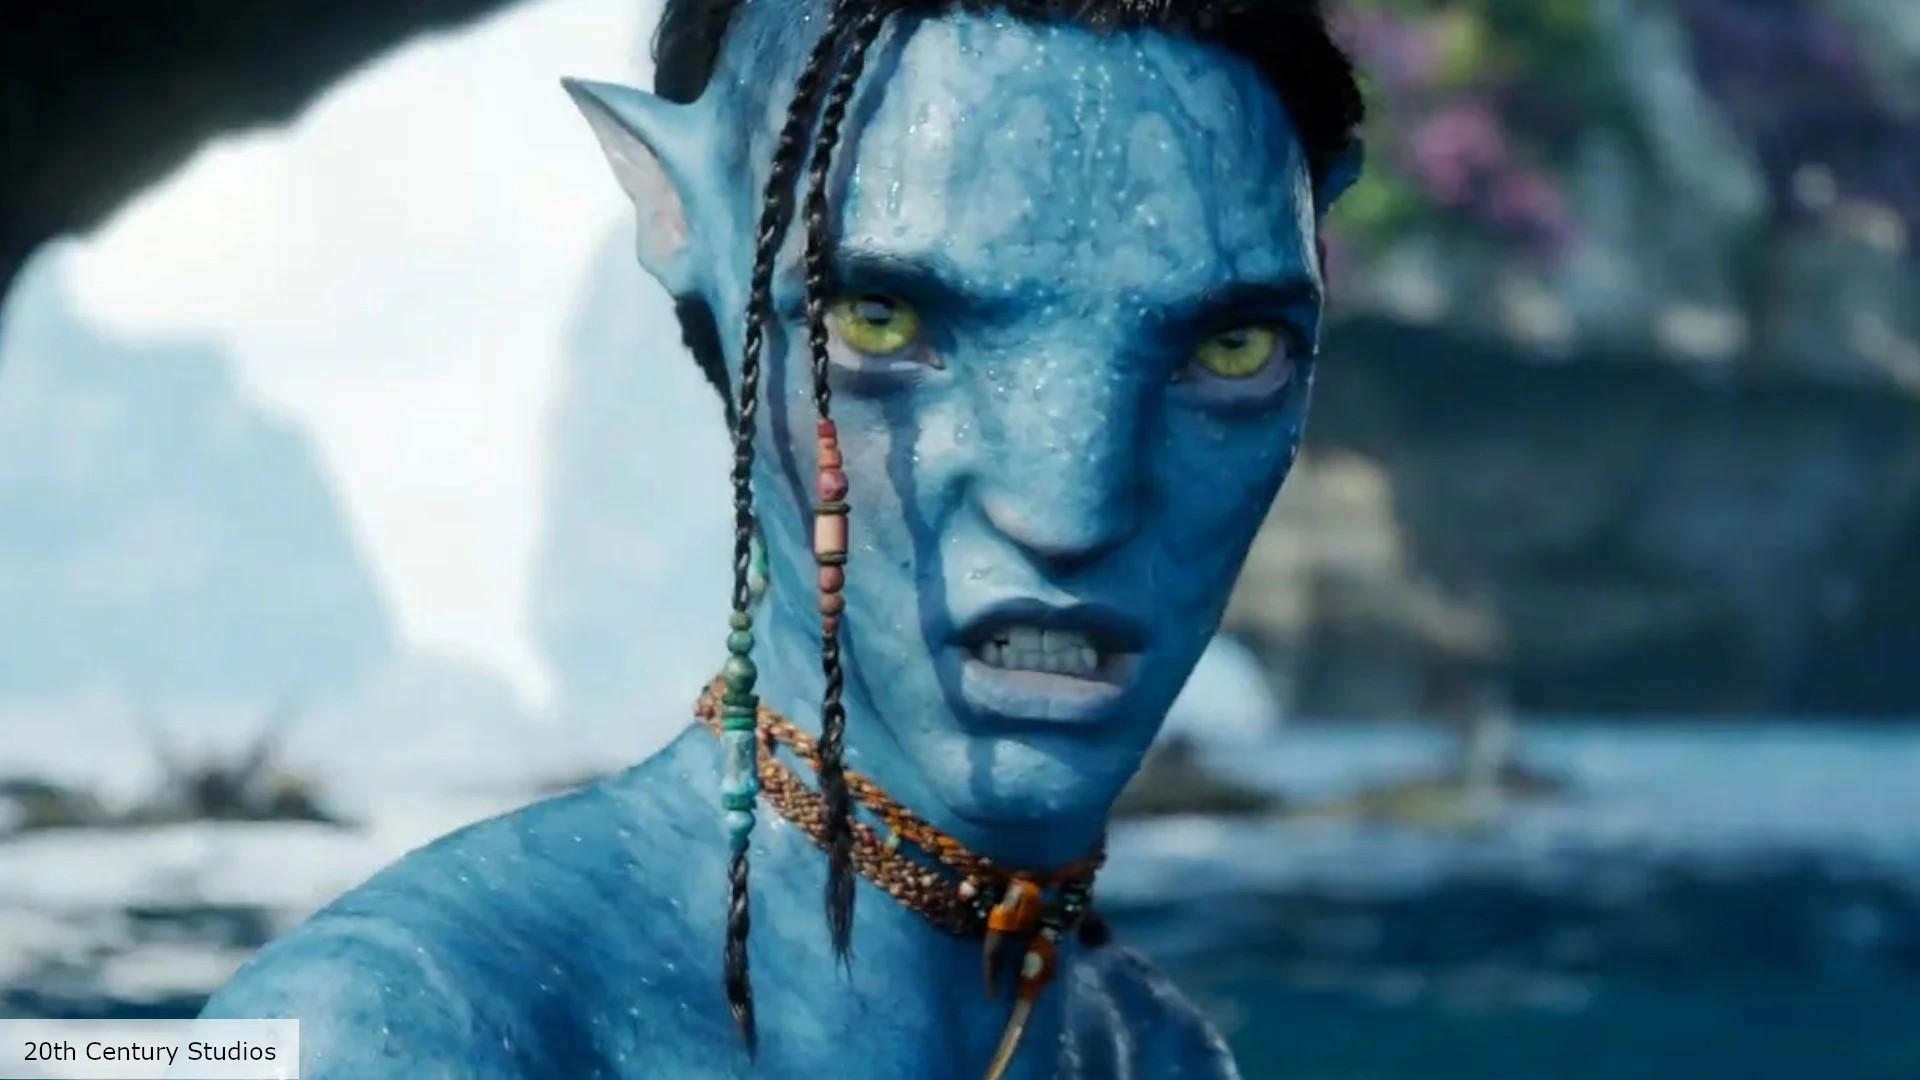 Avatar 3 dời lịch chiếu sang năm 2025